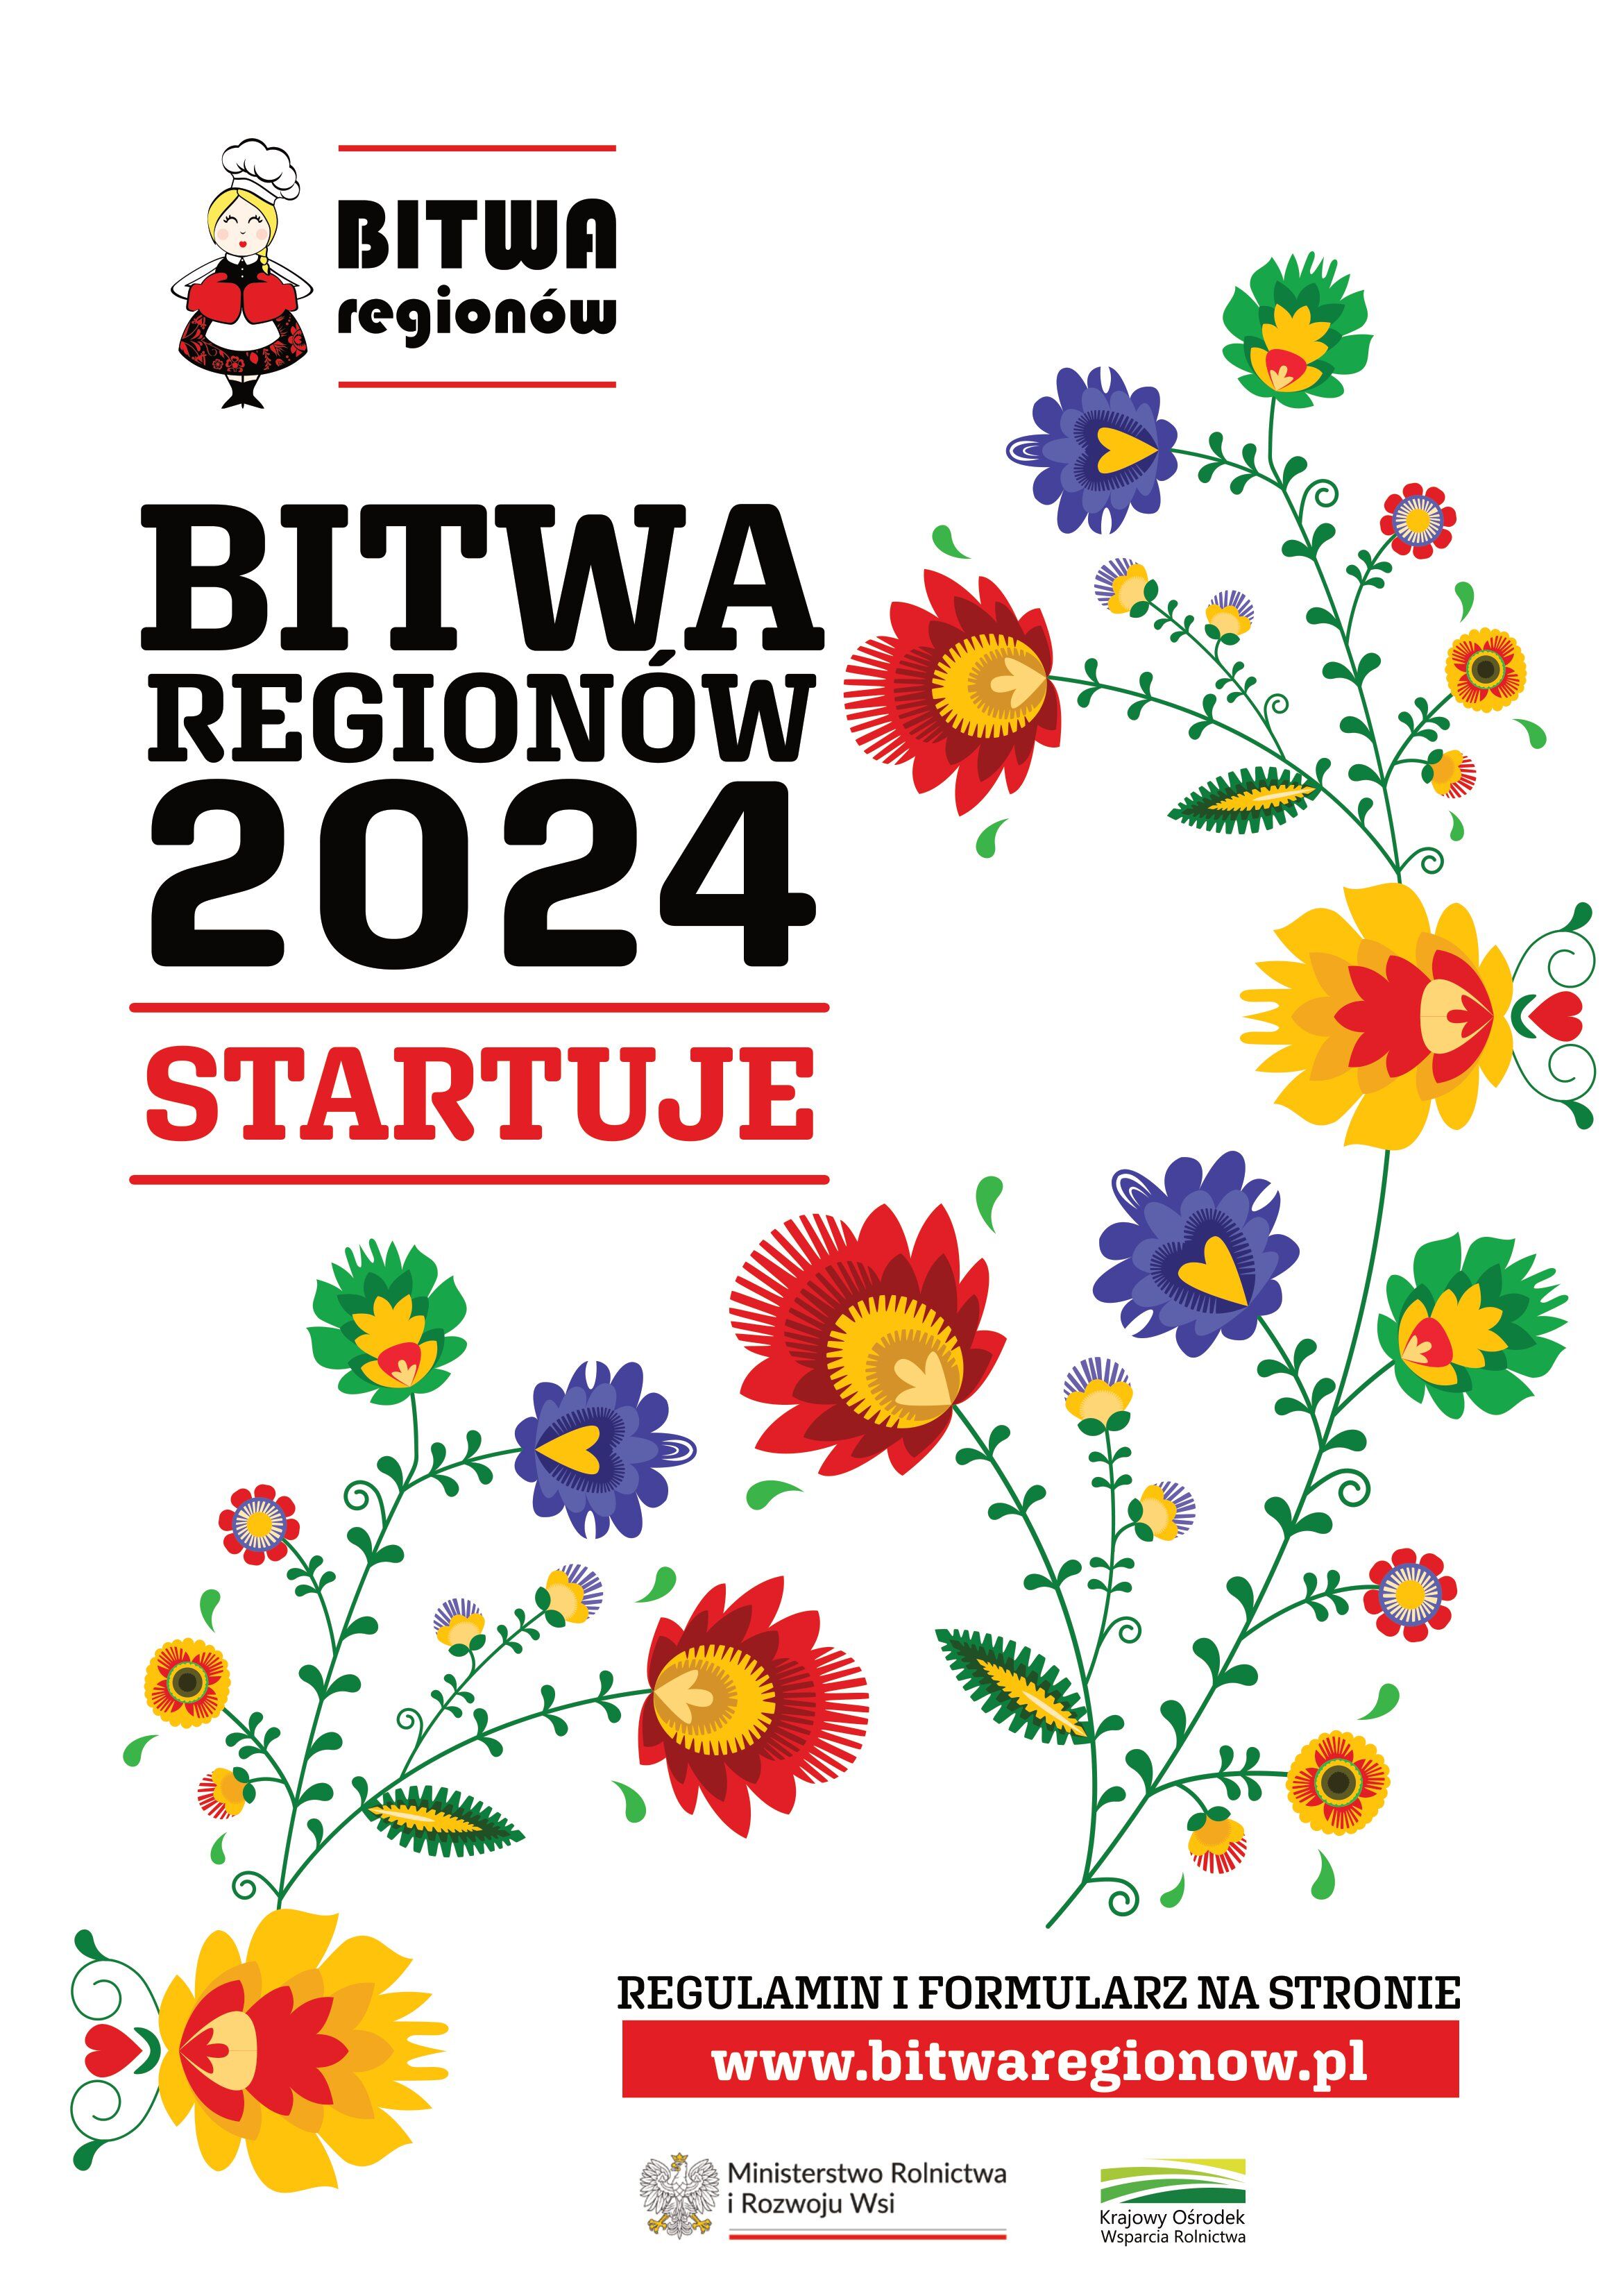 Plakat "Bitwa Regionów 2024" z kolorowymi kwiatami po prawej i lewej stronie, a na górze i dole czerwone i żółte akcenty z tekstem i logotypami.